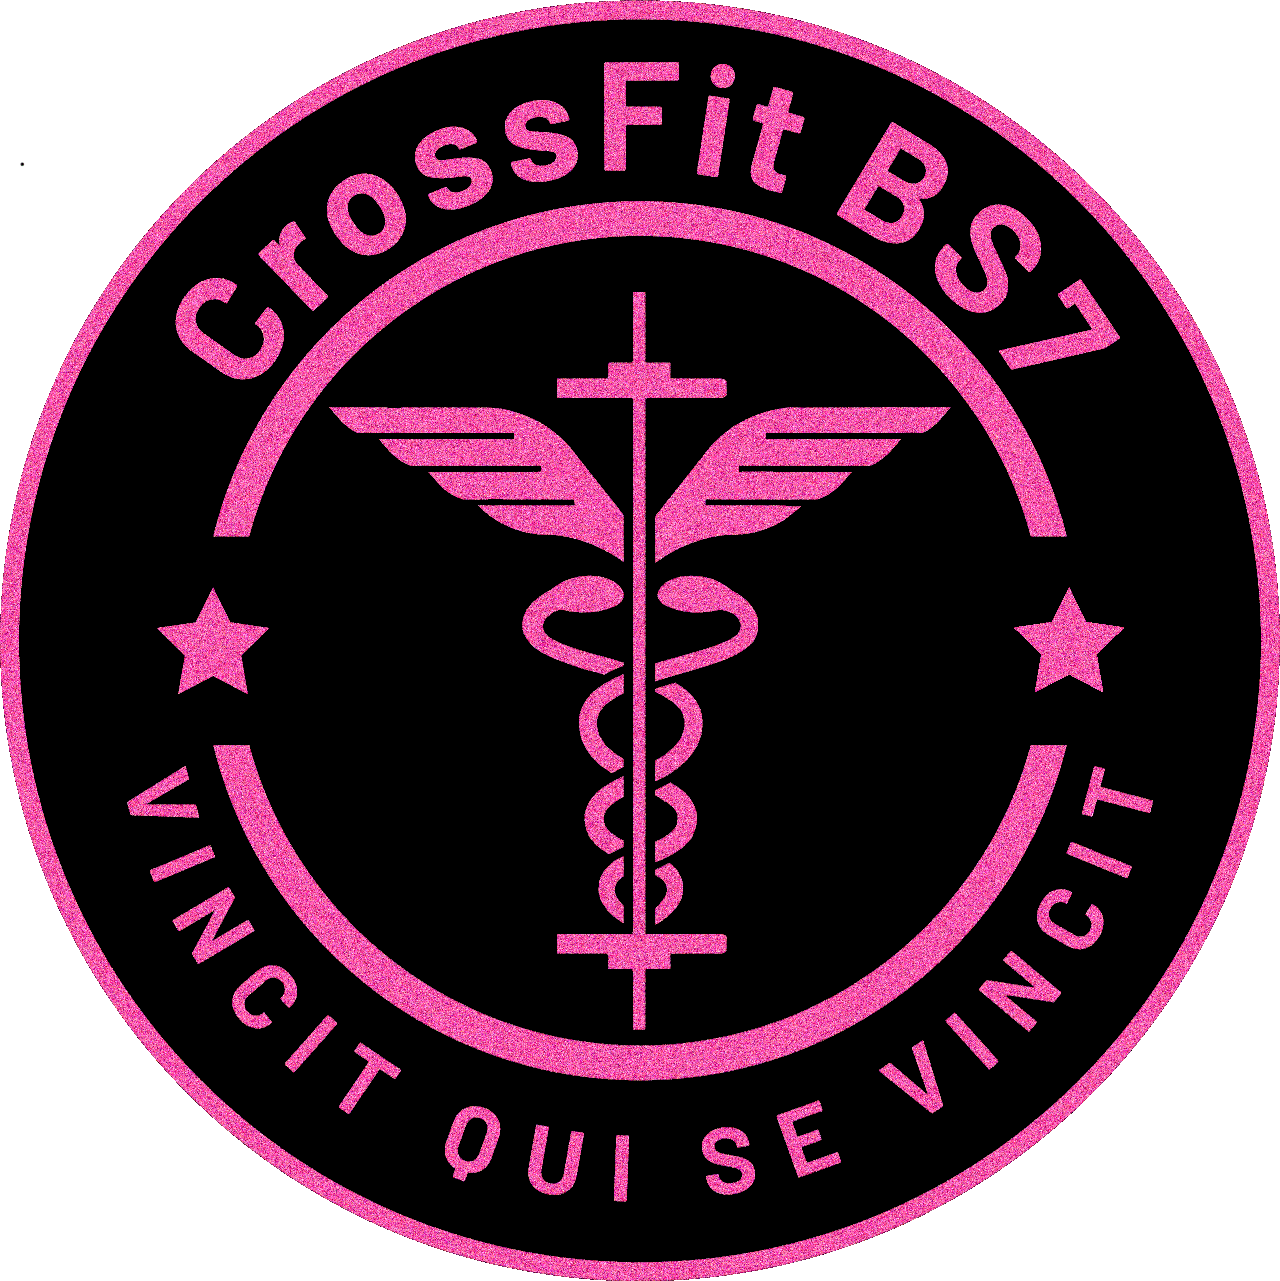 CrossFit BS7